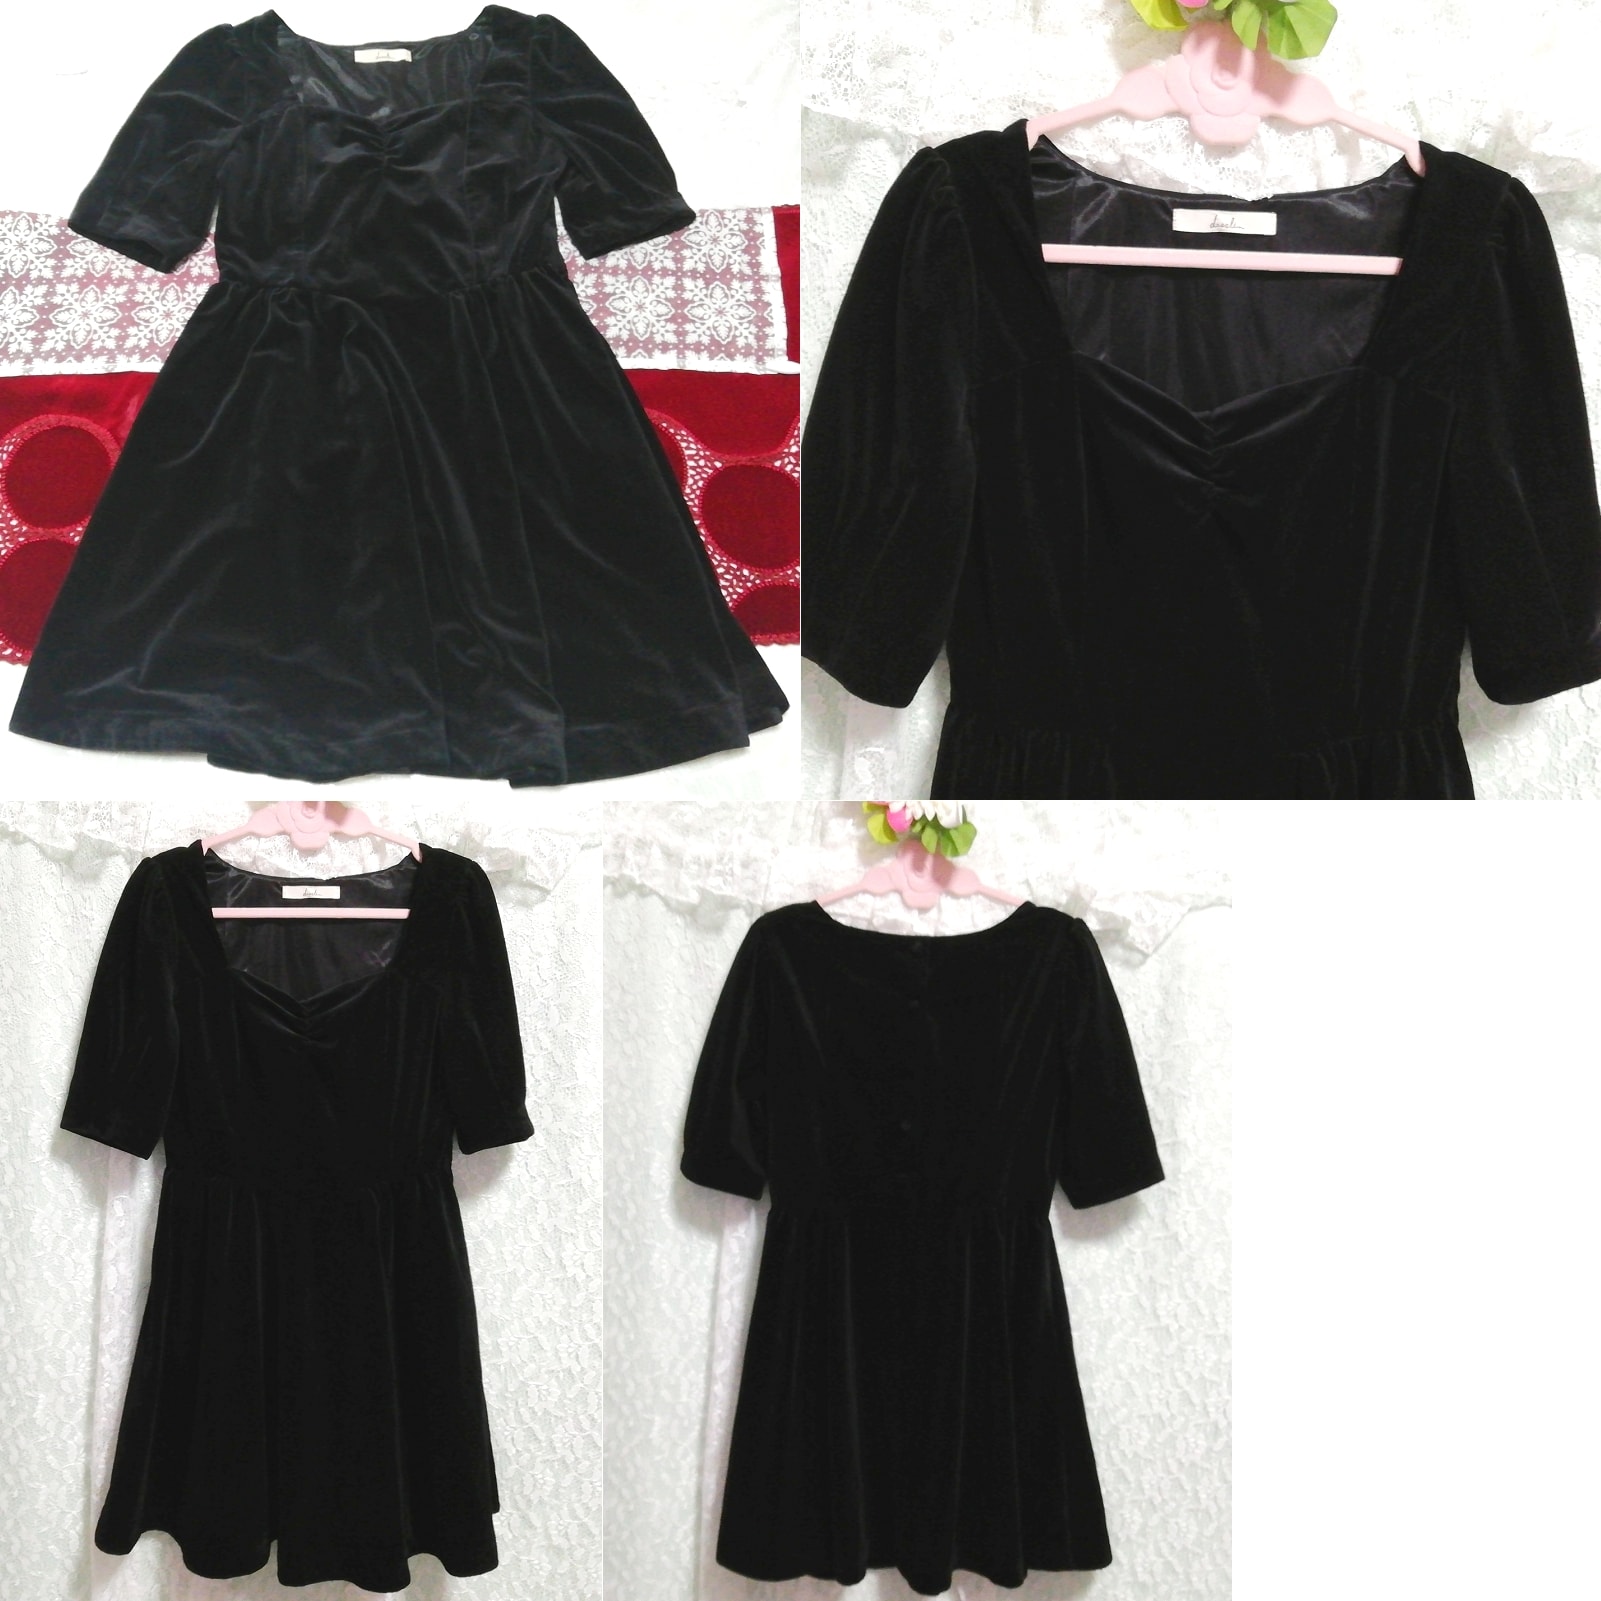 Schwarzes, glänzendes Negligé-Nachthemd aus Velours, einteiliges Kleid, Tunika, Kurzarm, Größe m